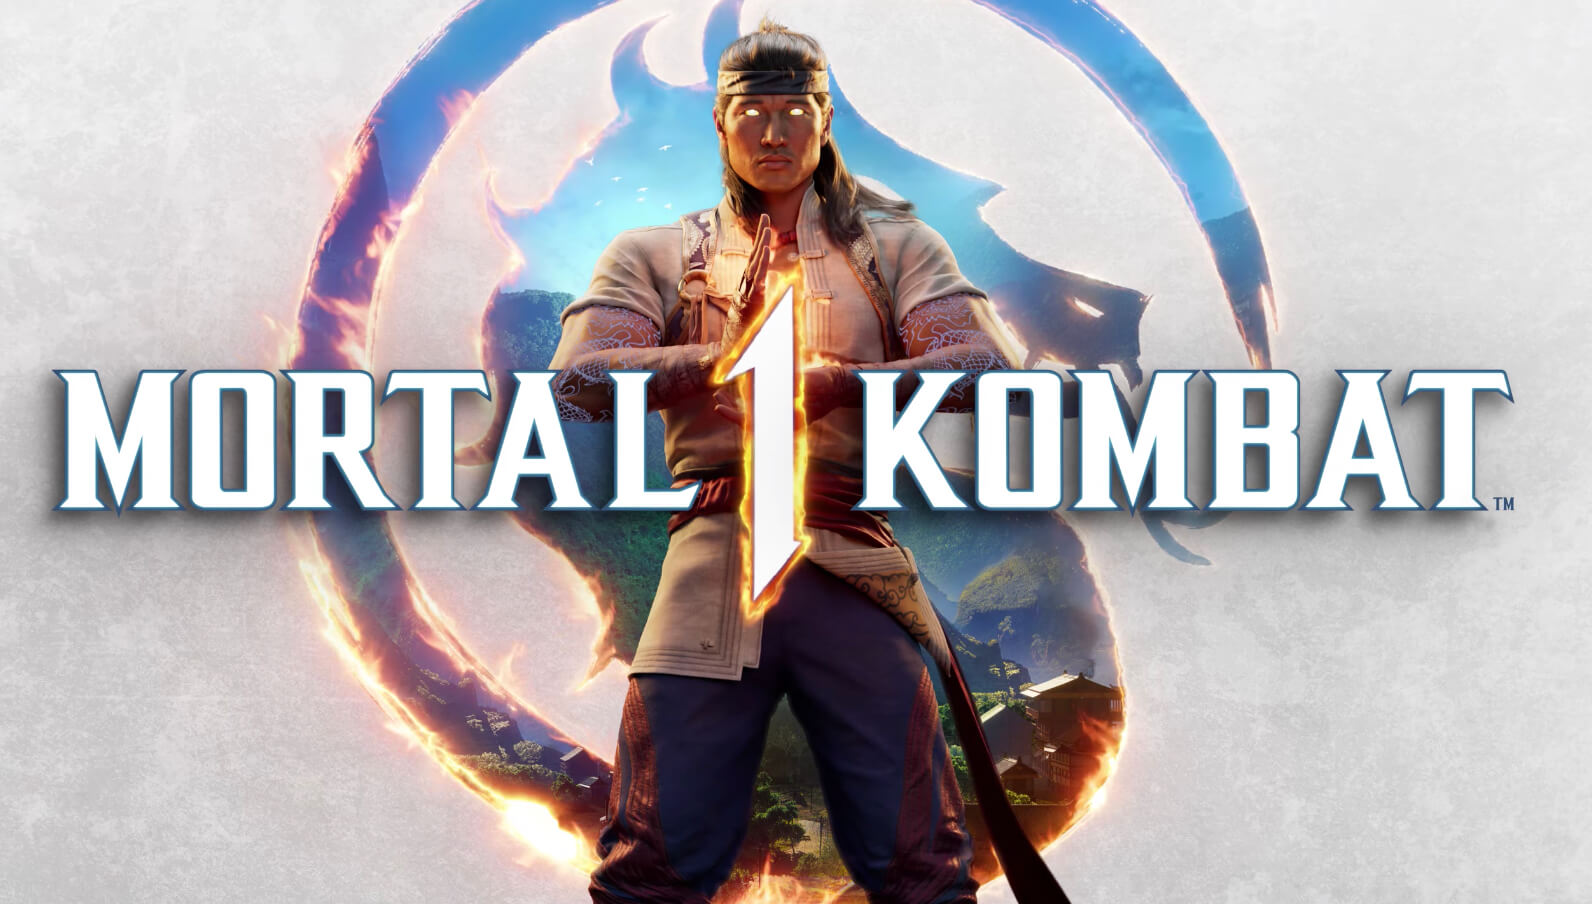 Авторы Mortal Kombat 1 показали содержимое коллекционного издания игры: с сайта NEWXBOXONE.RU